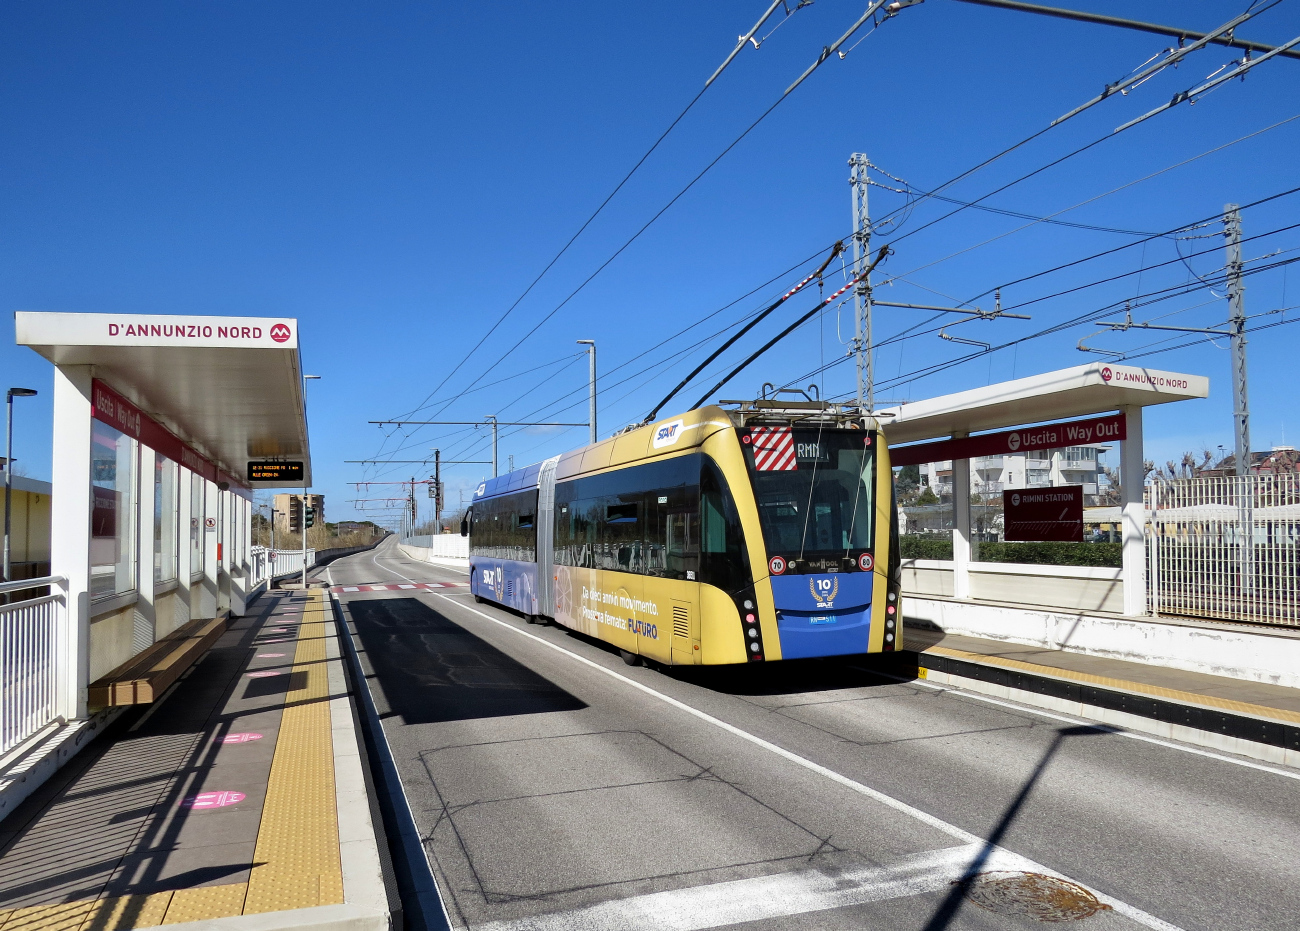 Римини, Van Hool Exqui.City 18 № 36511; Римини — Инфраструктура линии скоростного троллейбуса Metromare